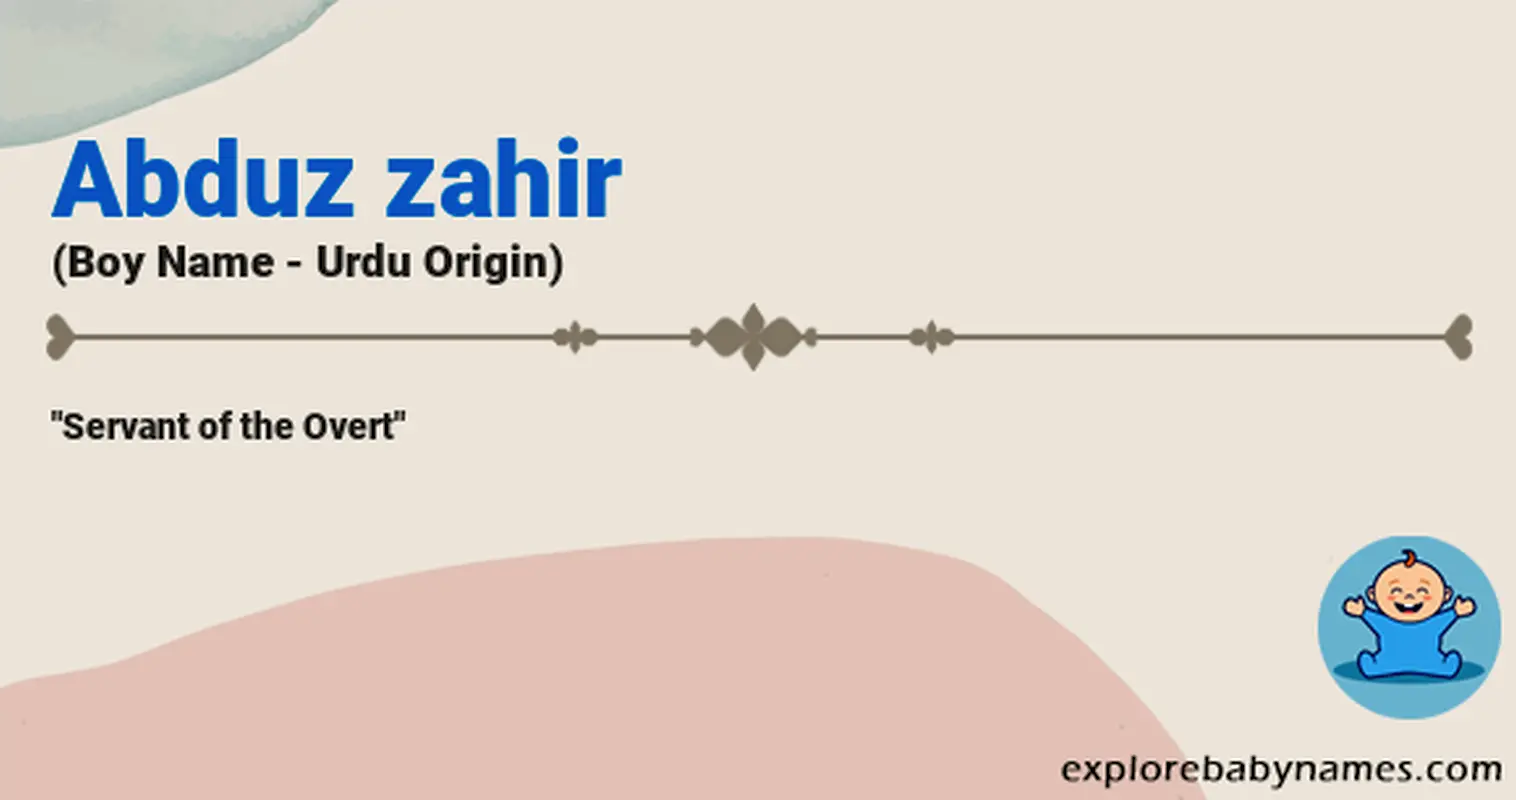 Meaning of Abduz zahir